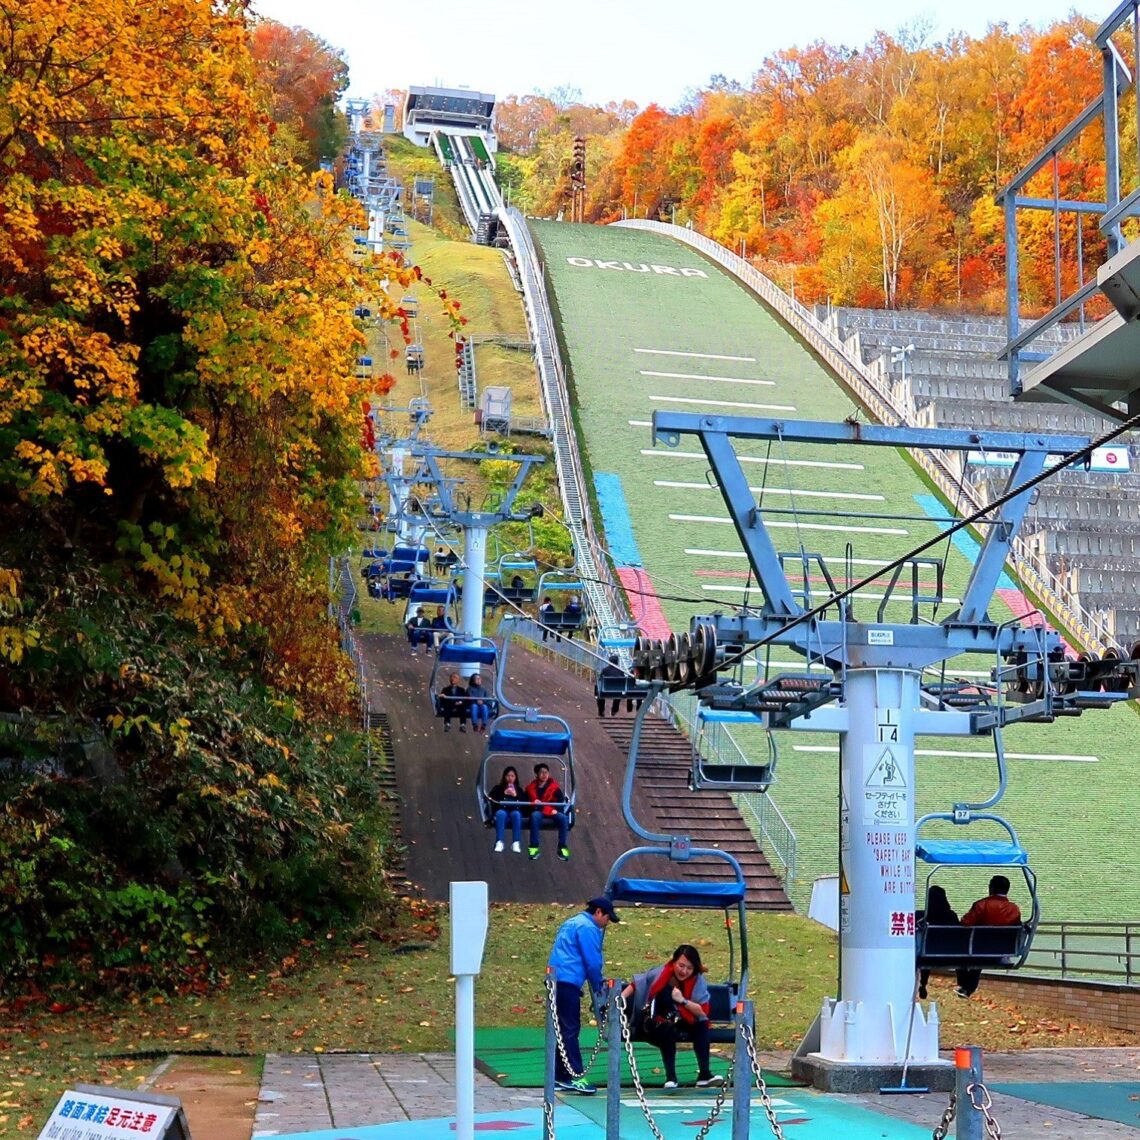 Mt. Okura Ski Jump Stadium & Observation Deck